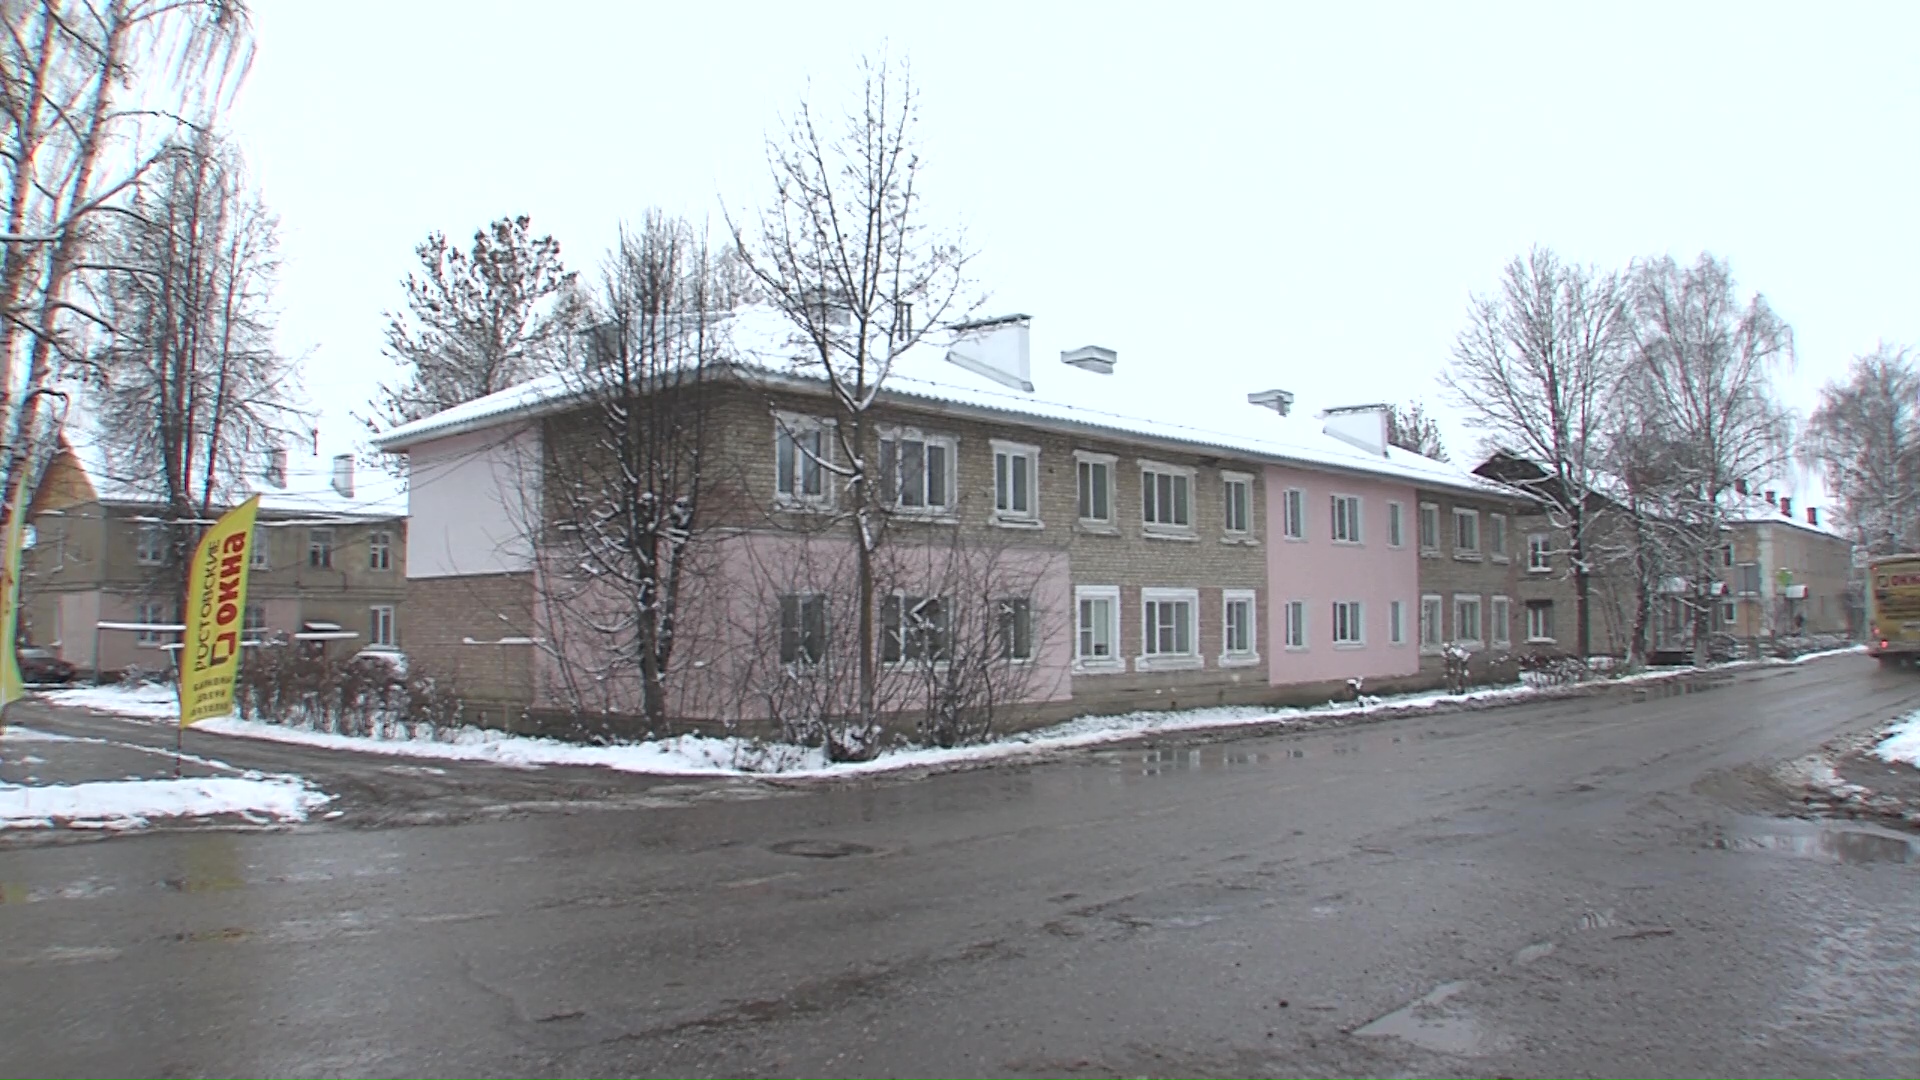 Зима в тепле и уюте: комиссия оценила качество капремонта дома в Гаврилов-Яме